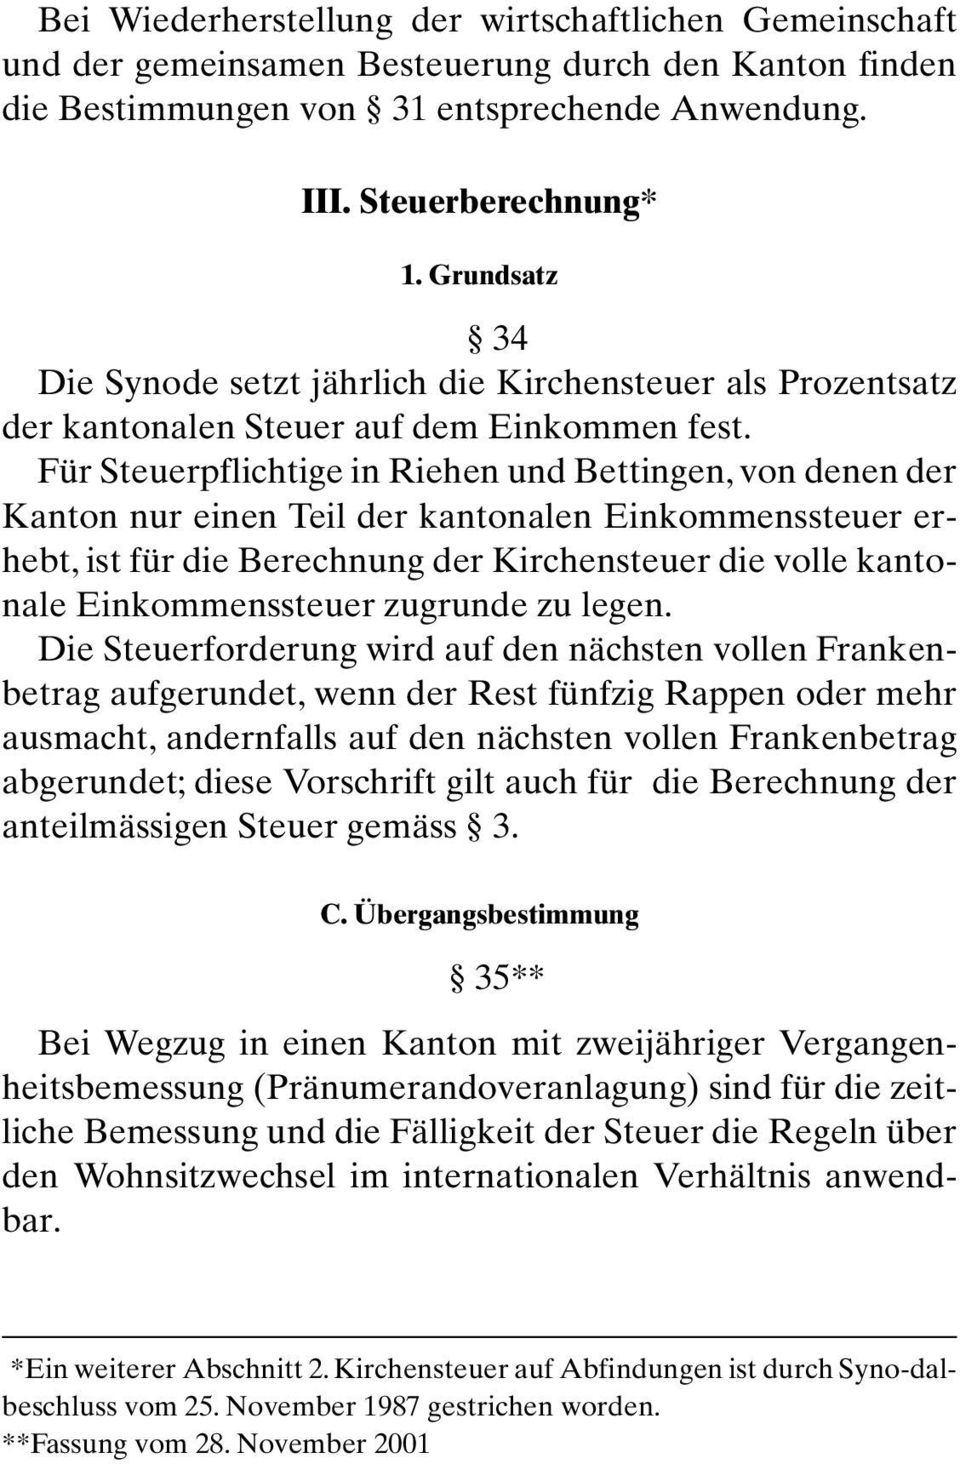 Für Steuerpflichtige in Riehen und Bettingen, von denen der Kanton nur einen Teil der kantonalen Einkommenssteuer erhebt, ist für die Berechnung der Kirchensteuer die volle kantonale Einkommenssteuer